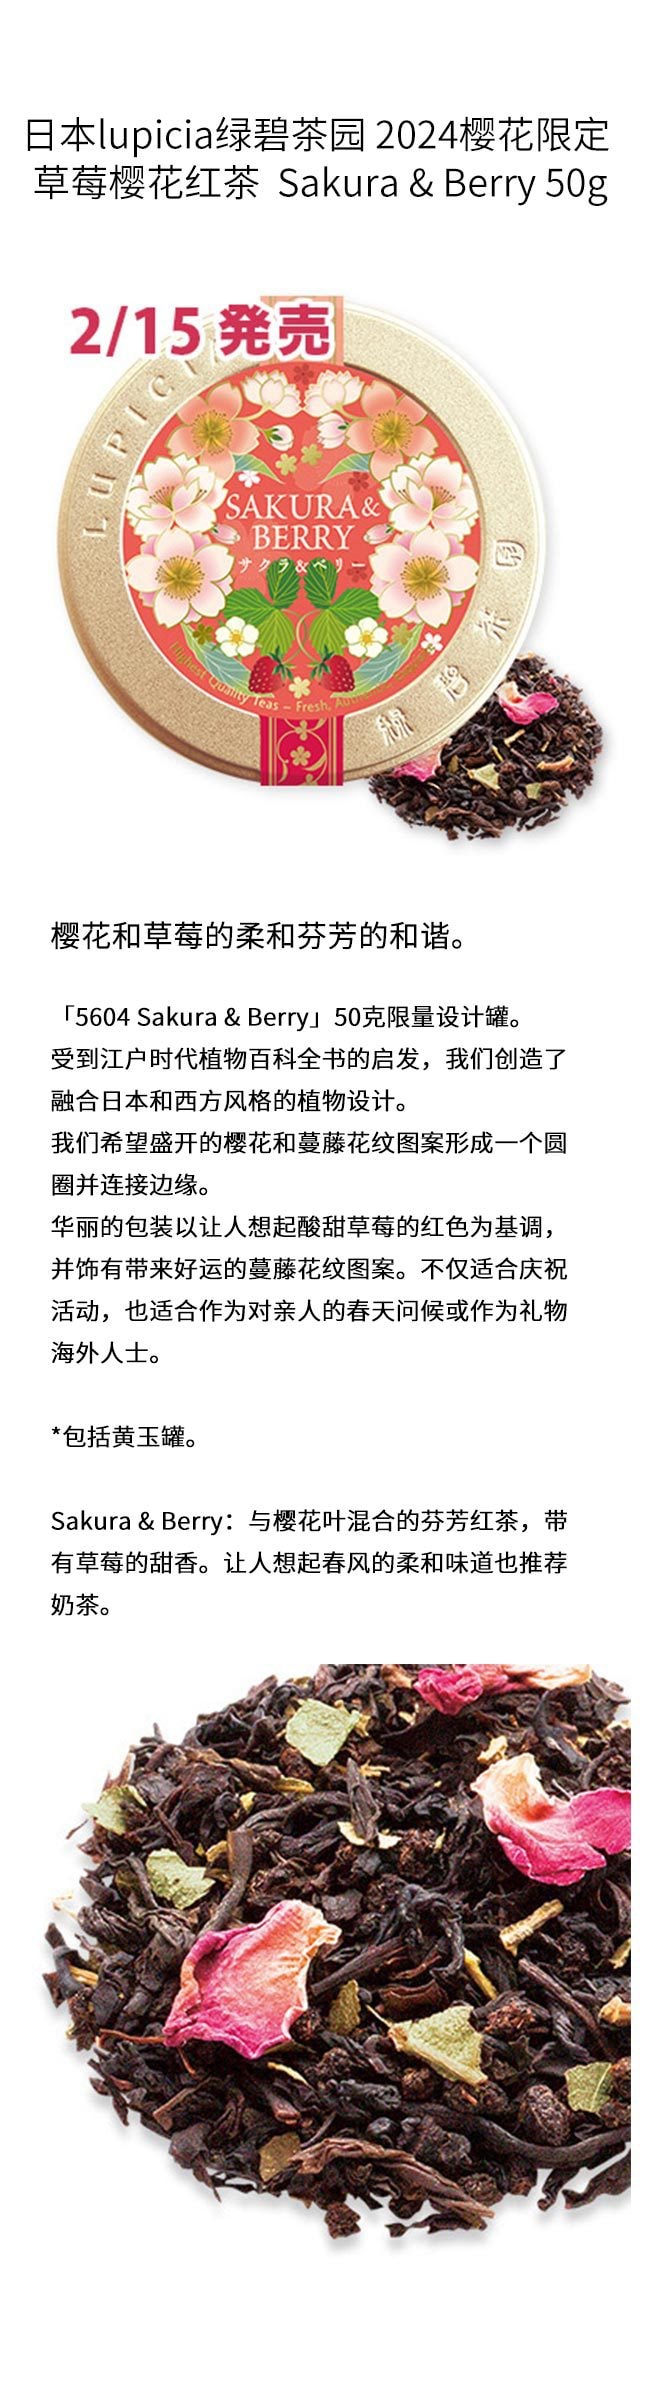 【日本直邮】日本lupicia绿碧茶园 2024樱花限定 草莓樱花红茶 Sakura & Berry 50g